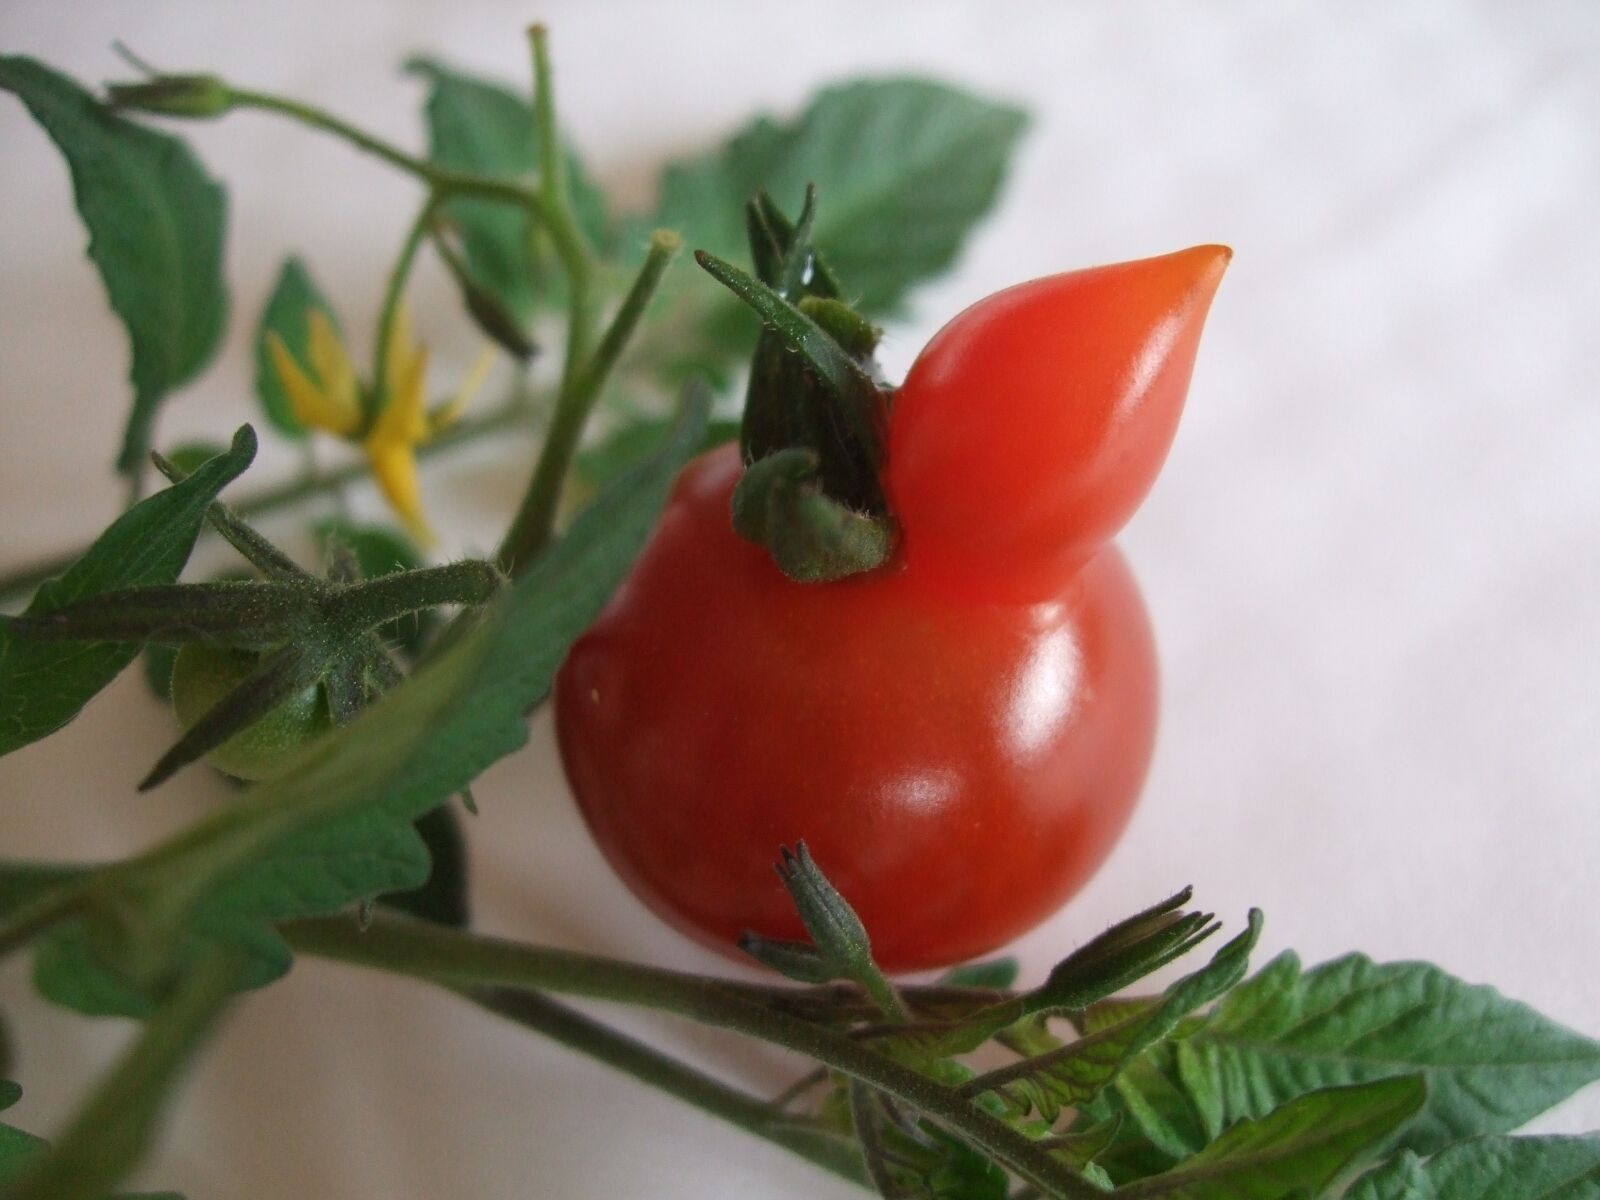 Fujifilm FinePix F40fd sample photo. Mini tomato, red, tomatoes photography